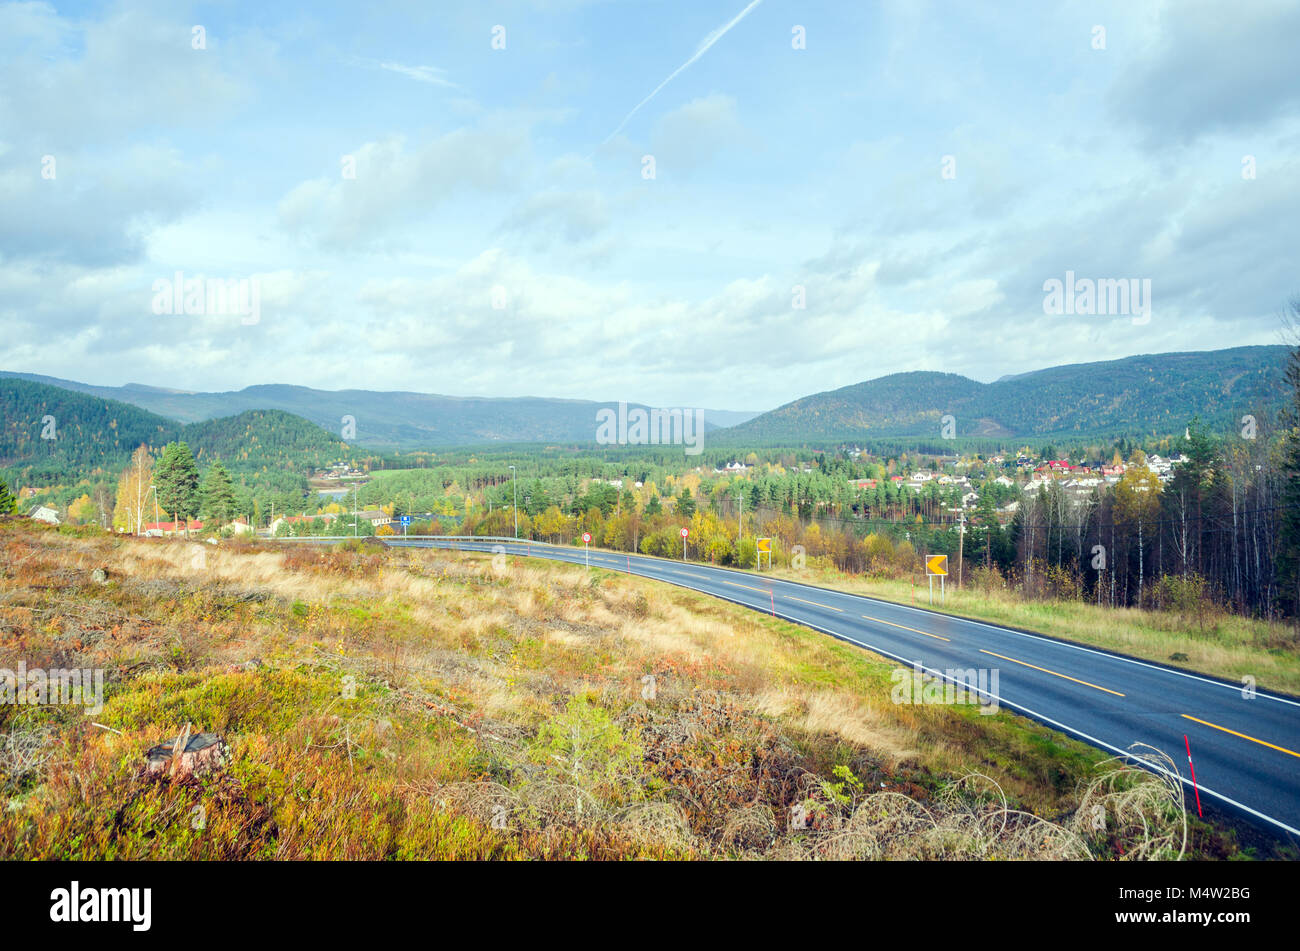 Fylkeveie 42 - lokale Straße Nummer 42 - Eingabe Tal der Otra Fluß, in der Nähe im Zentrum von Norwegen, Europa zu Evje. Stockfoto